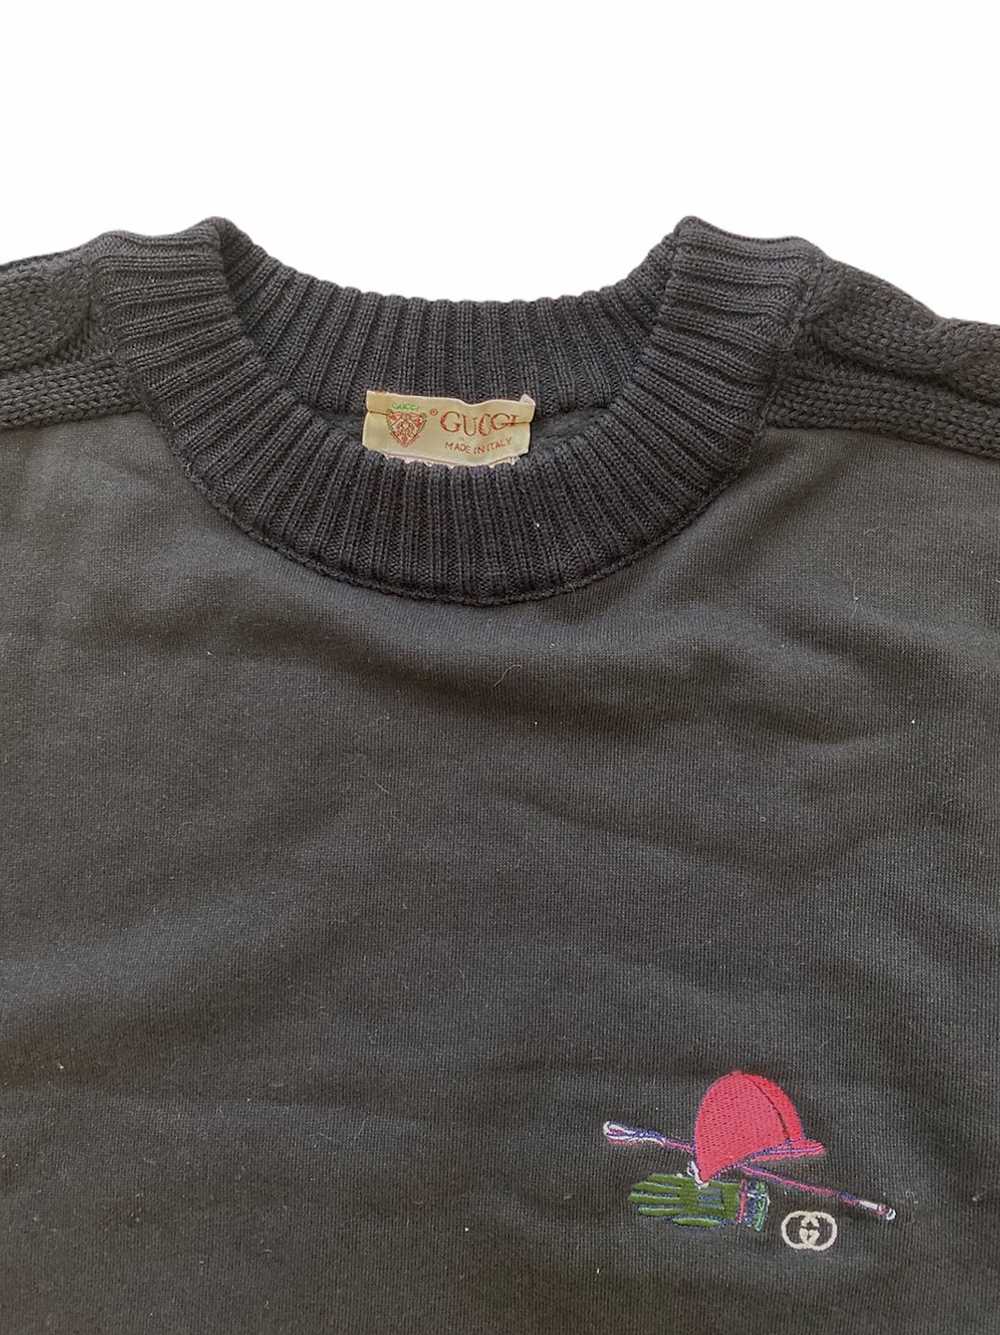 Rare Vintage 1980s Gucci Sweater (L) - image 5